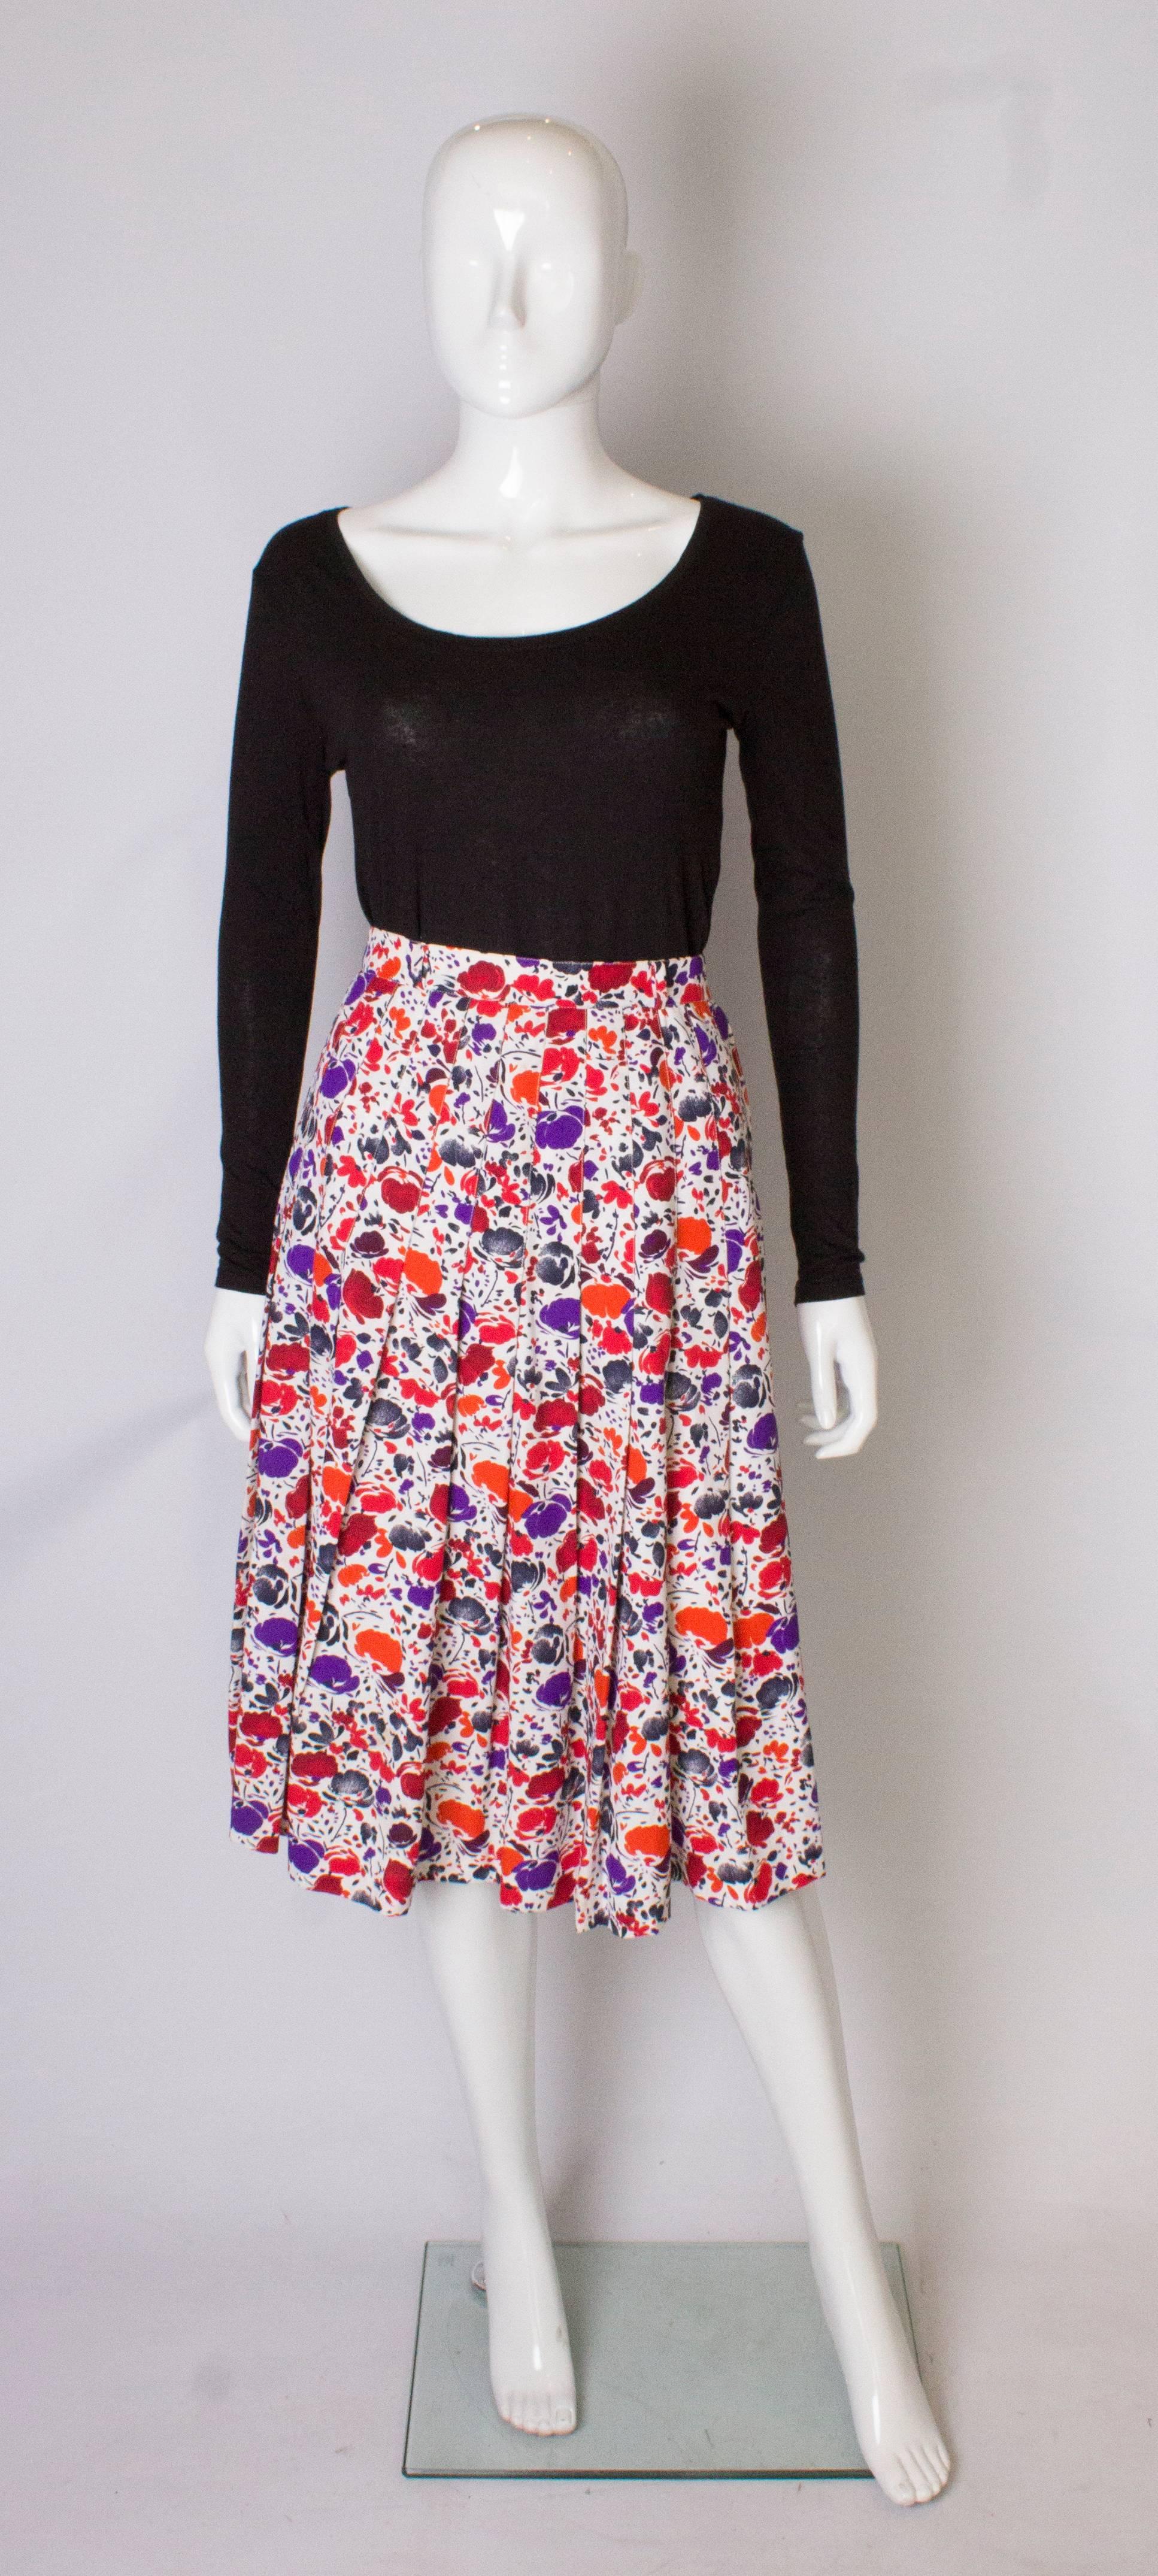 Une jupe plissée vintage chic de la boutique Jean Louis Scherer. La jupe porte le numéro 087951, et a un fond blanc avec un imprimé rouge, orange et violet. La jupe a des plis cousus jusqu'à la hanche et crée ainsi une ligne lisse. La jupe a une